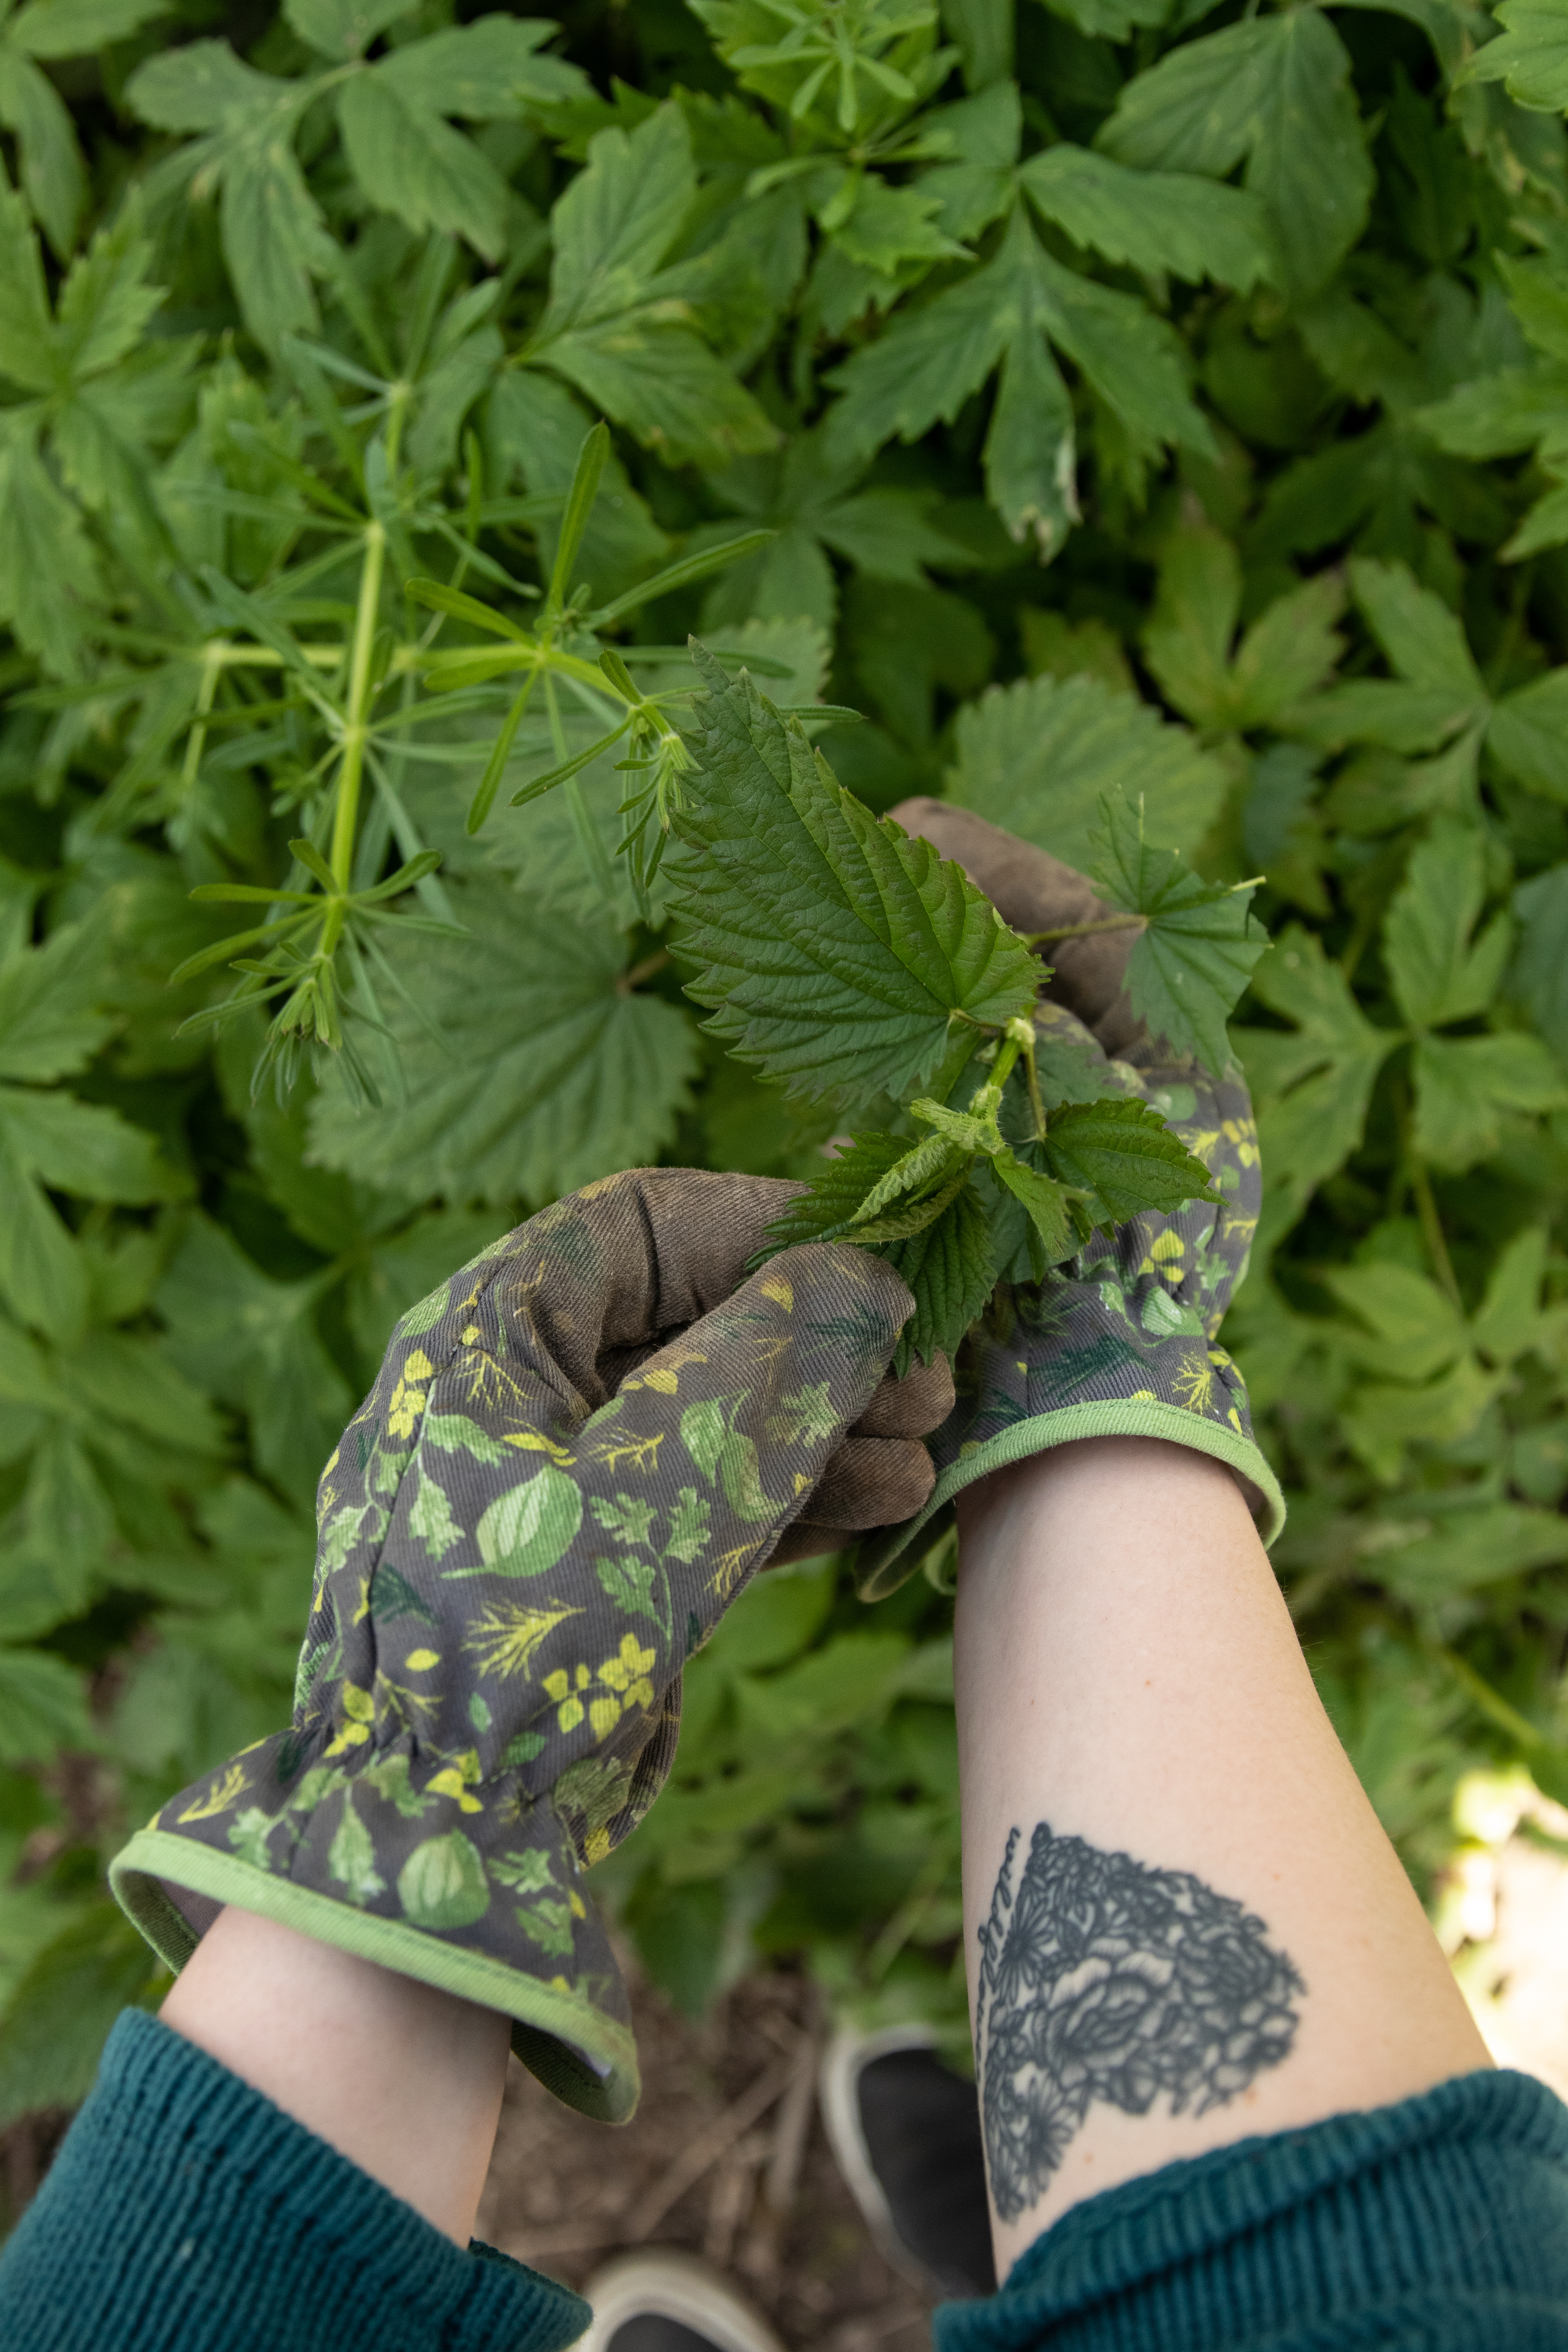 hands-in-gardening-gloves-harvesting-stinging-nettles